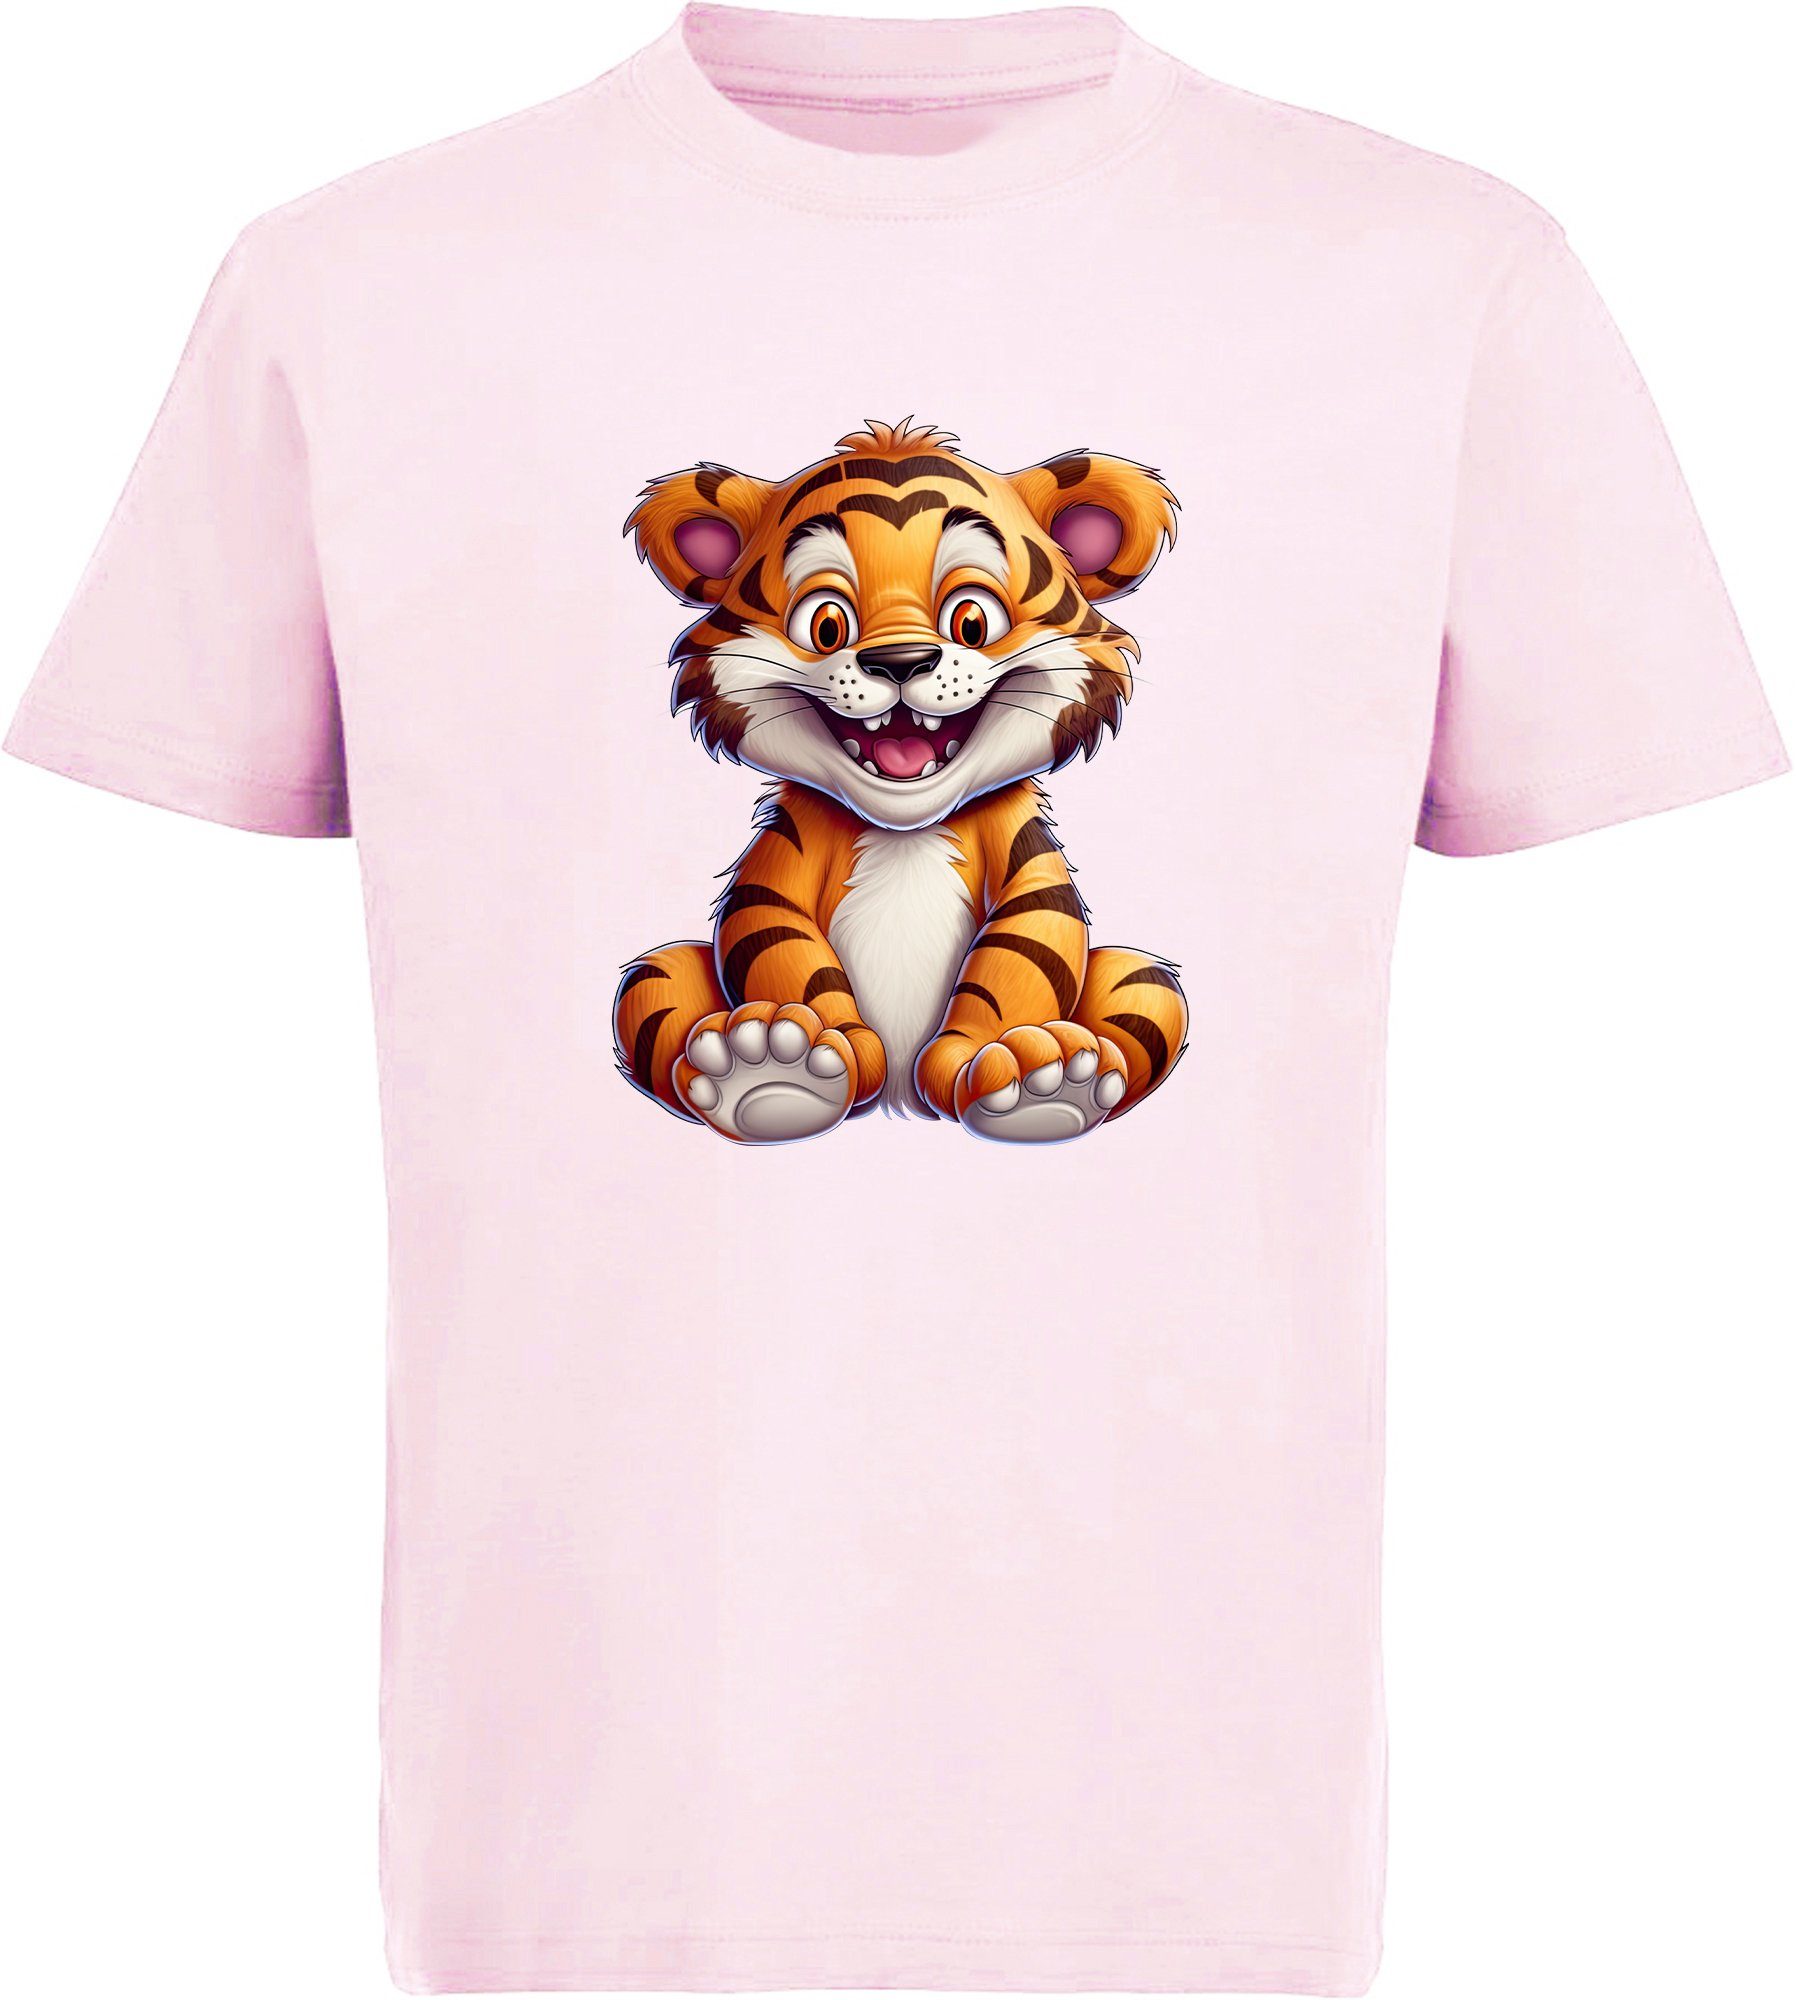 MyDesign24 T-Shirt Kinder Wildtier Print Shirt bedruckt - Baby Tiger Baumwollshirt mit Aufdruck, i278 rosa